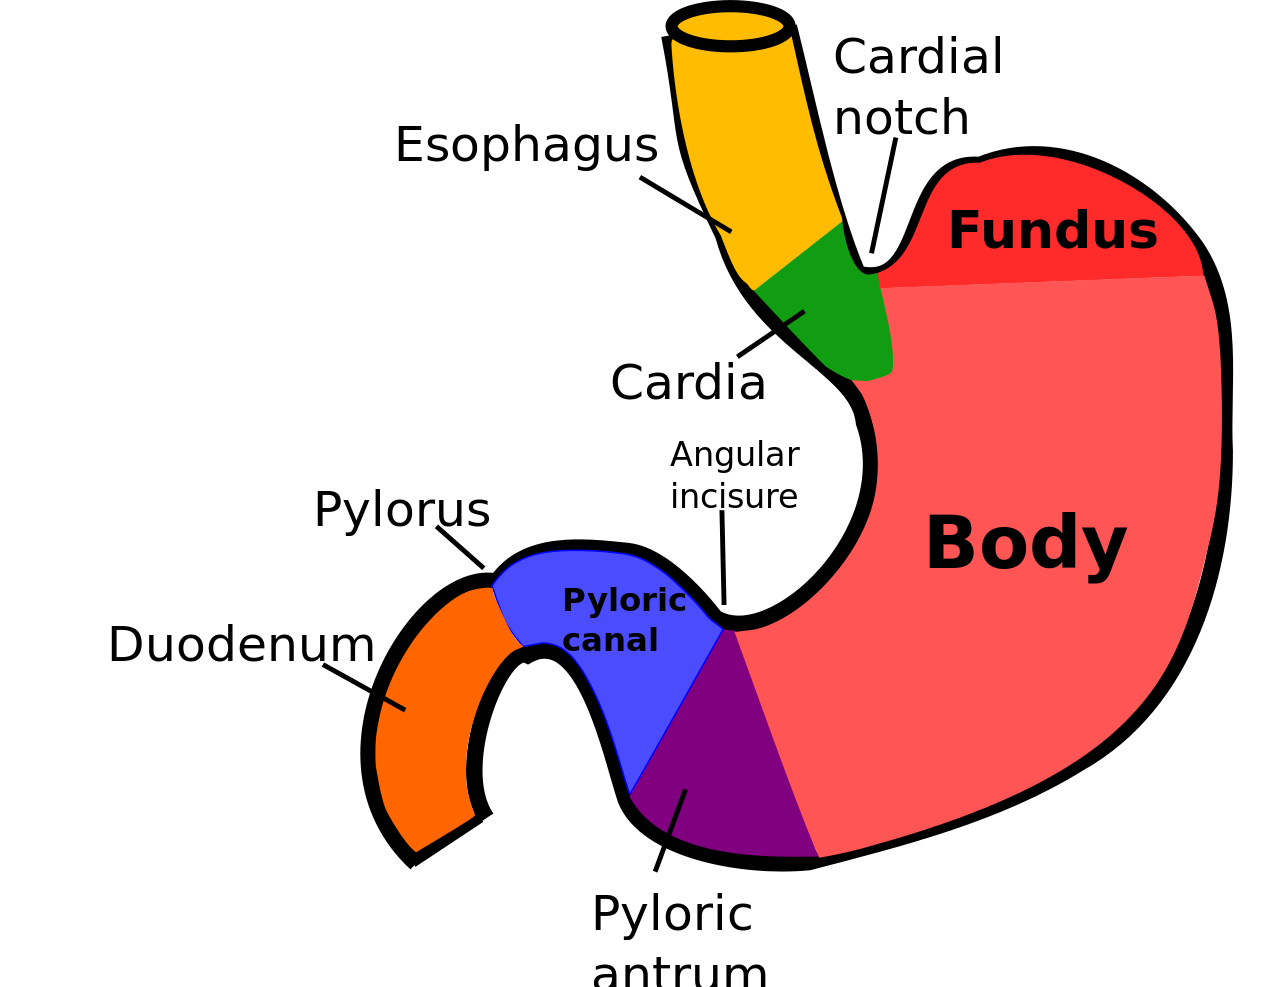 Маркеры желудка. Строение желудка кардиальная вырезка. Желудок кардиальный отдел желудка. Пилорический отдел желудка схема. Кардиальная часть желудка анатомия.